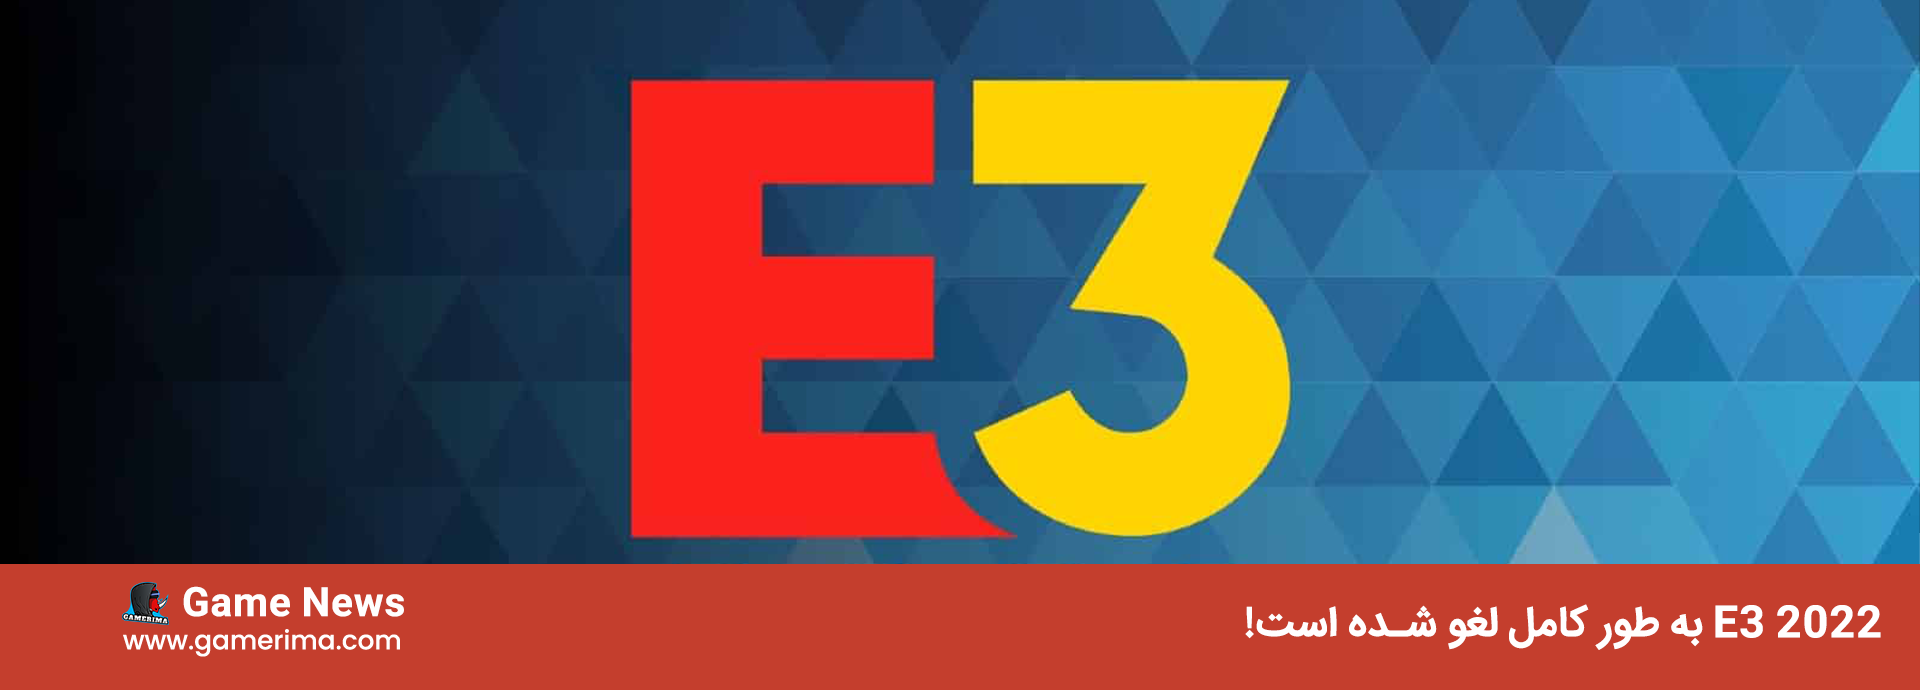 E3 2022 به طور کامل لغو شده است، شامل دیجیتال است